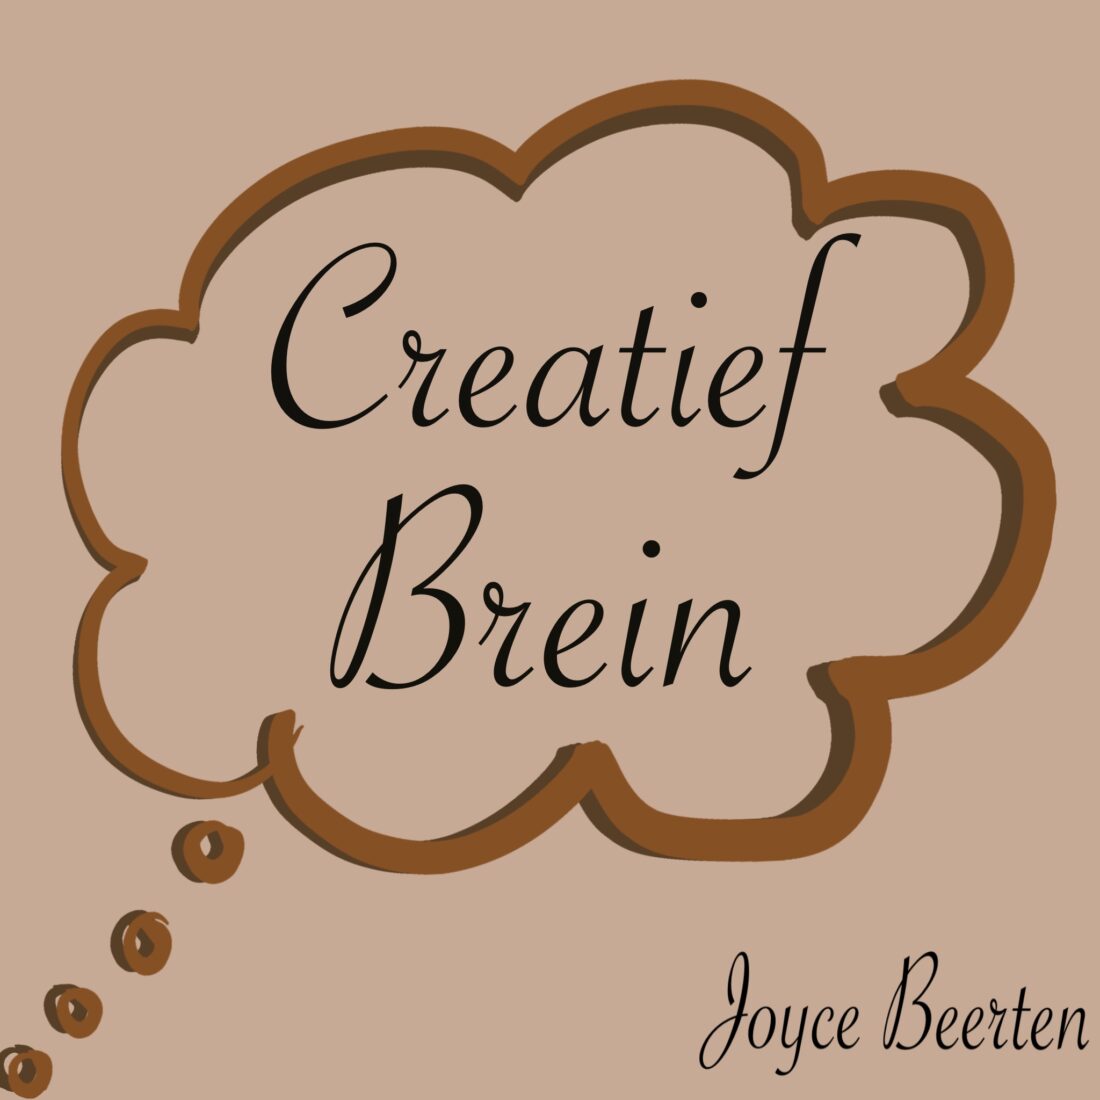 Creatief brein van joyce